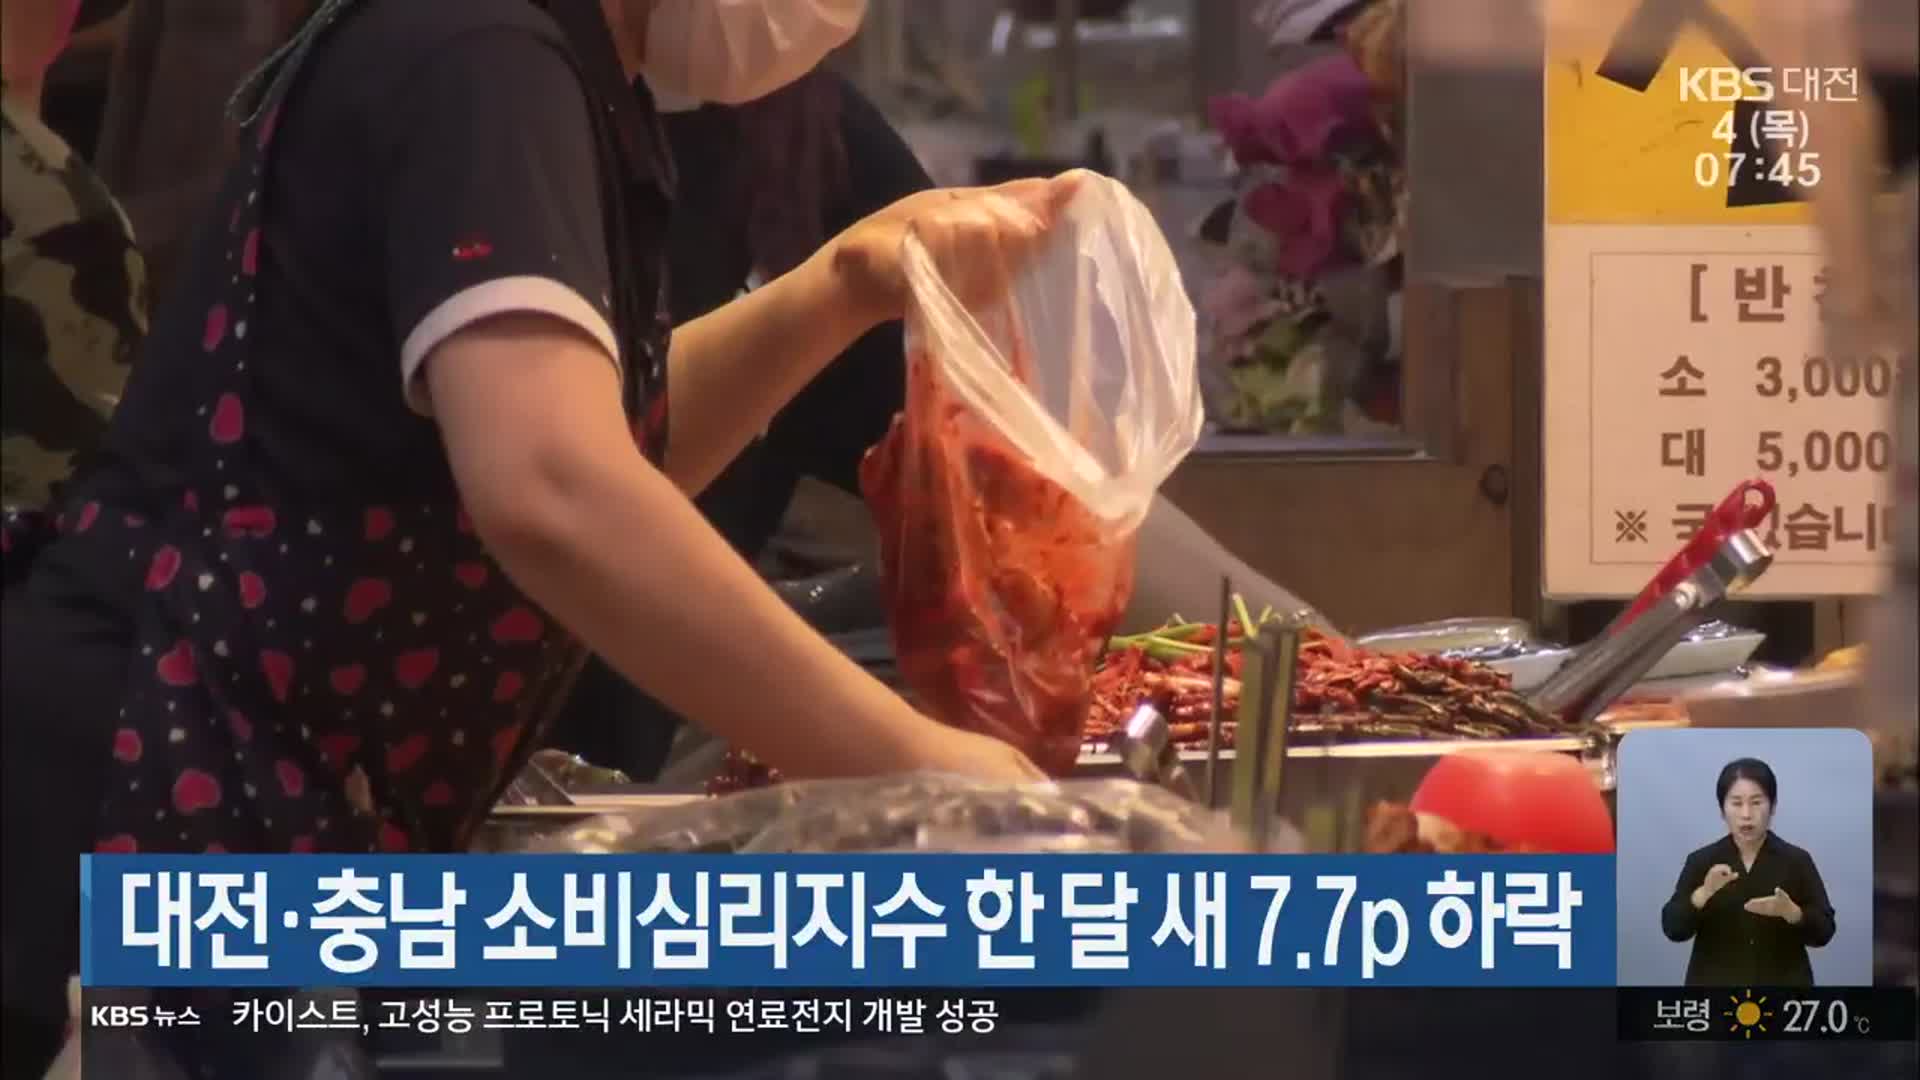 대전·충남 소비심리지수 한 달 새 7.7p 하락